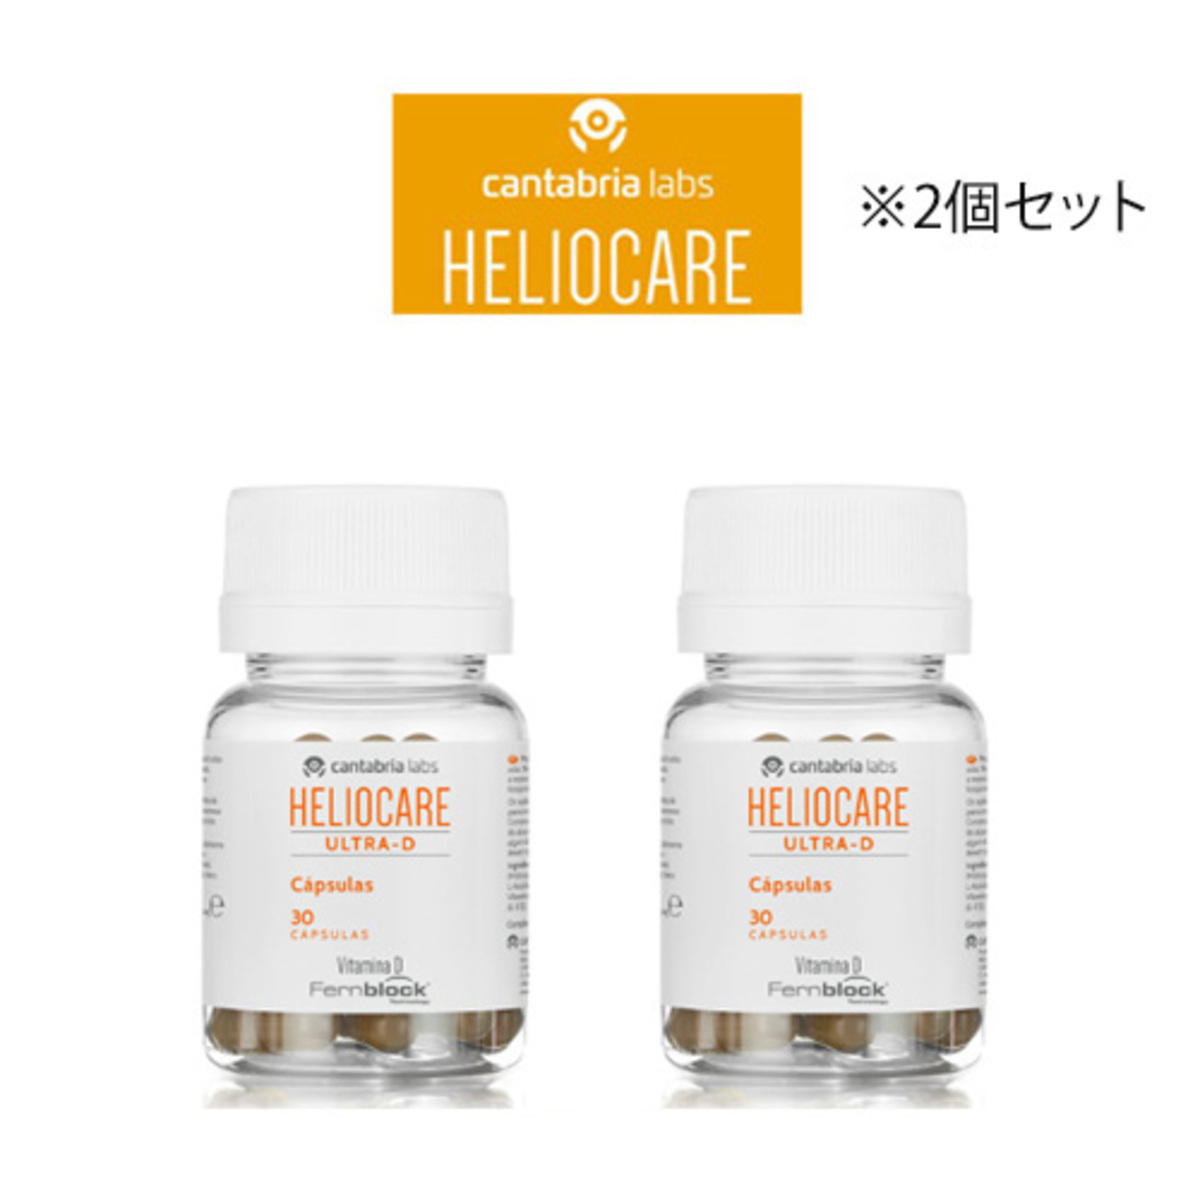 Heliocare ヘリオケア スペシャルセット | gulatilaw.com